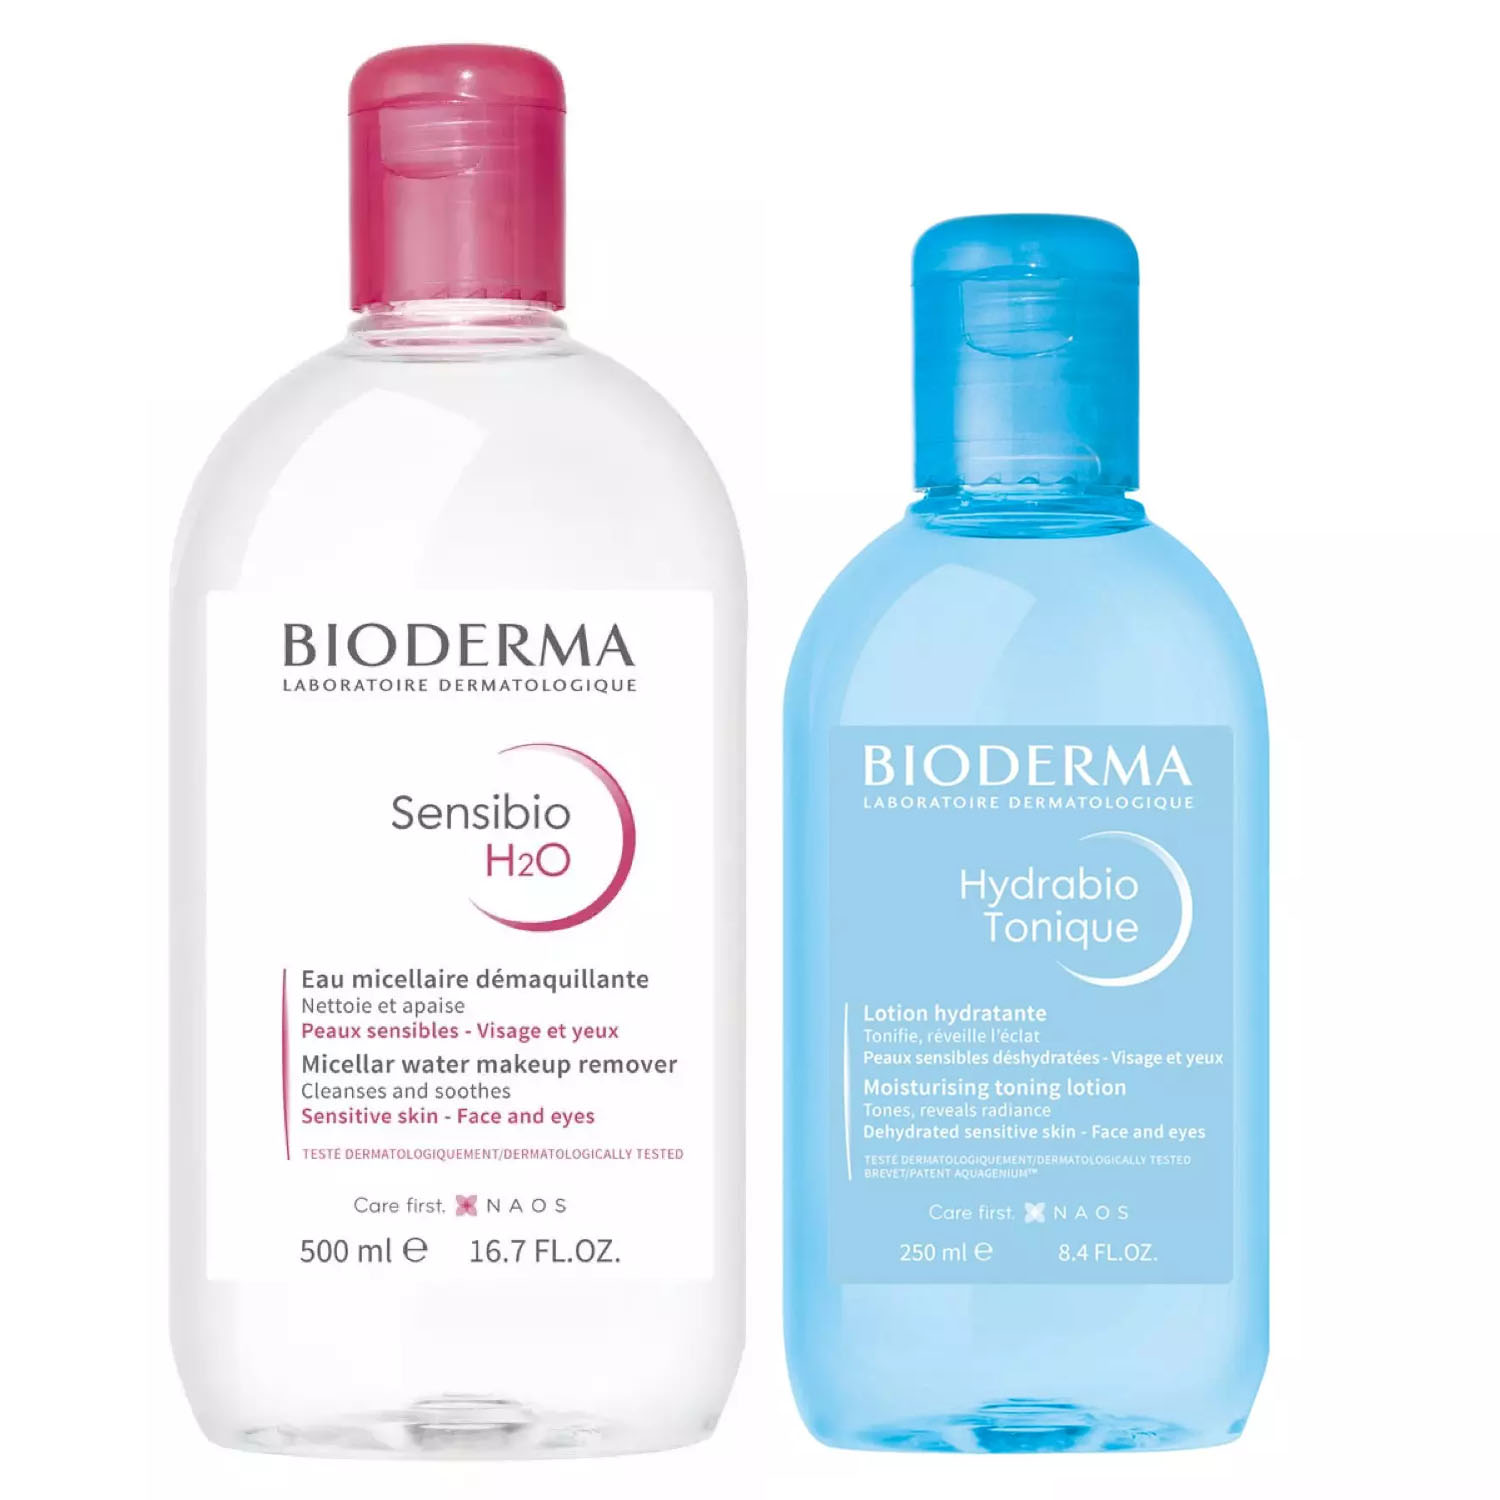 bioderma набор для ежедневного очищения кожи лосьон 250 мл мицеллярная вода 500 мл bioderma sensibio Bioderma Набор для ежедневного очищения кожи: лосьон, 250 мл + мицеллярная вода, 500 мл (Bioderma, Sensibio)